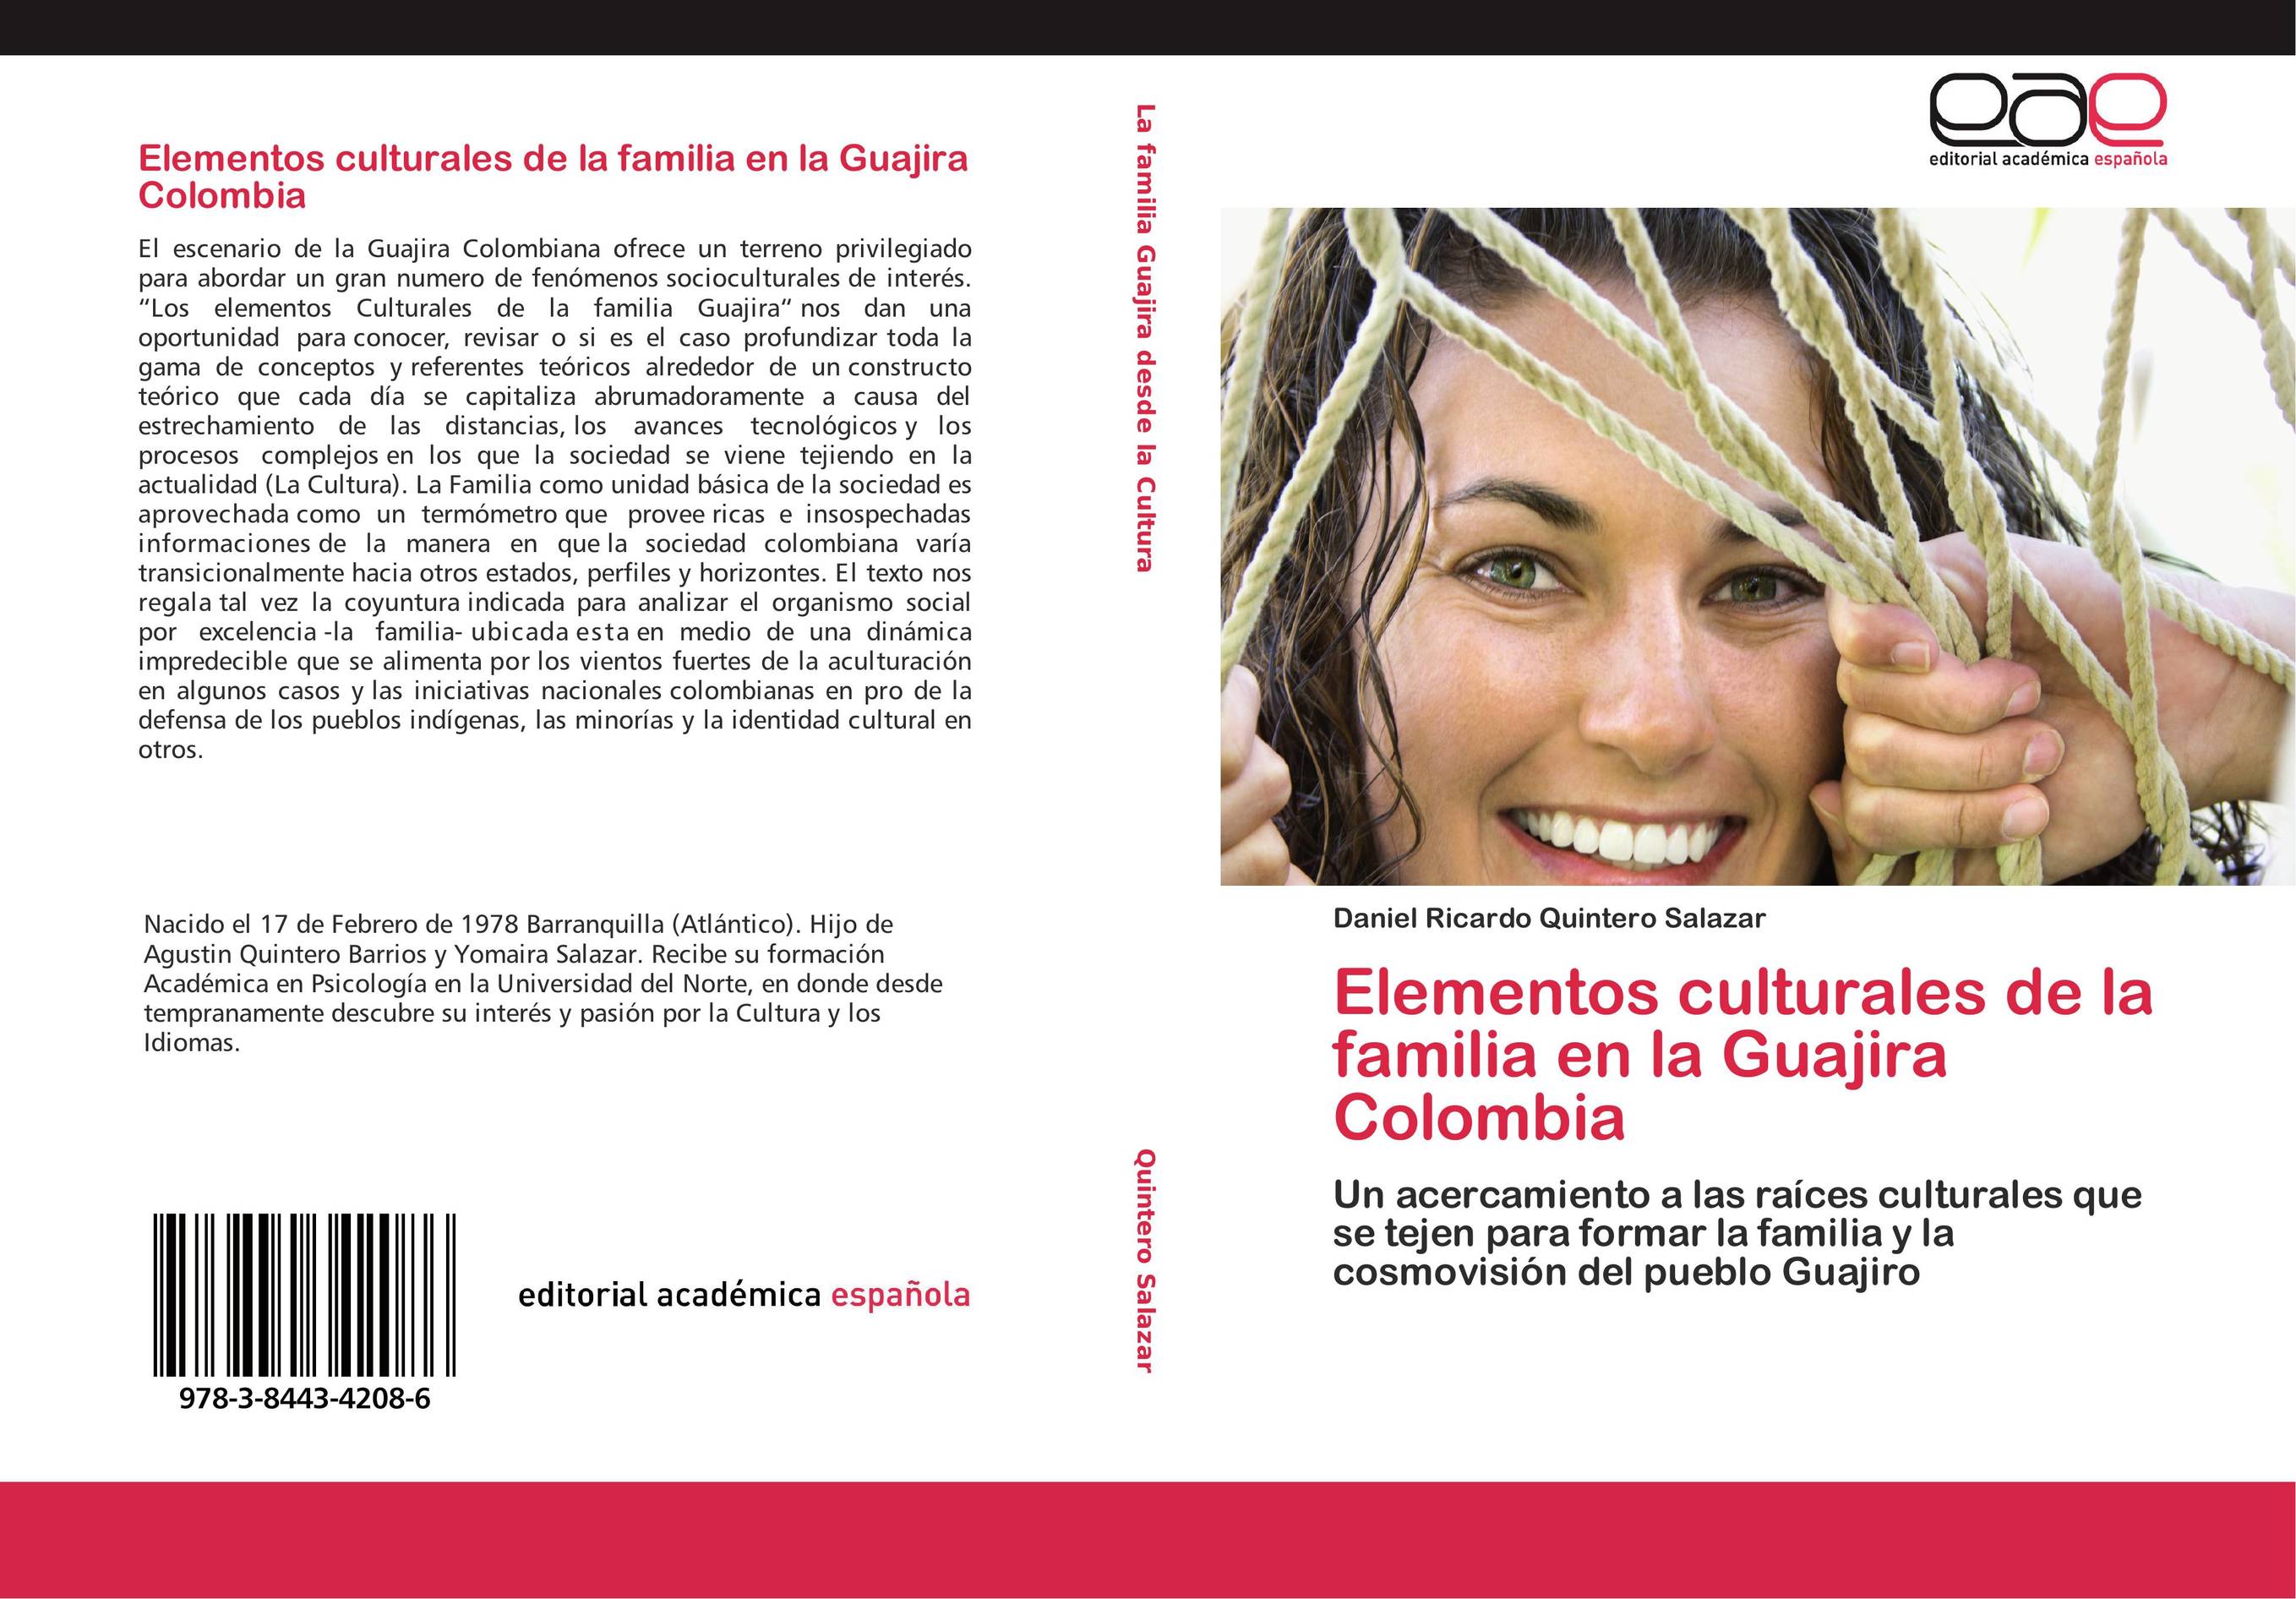 Elementos culturales de la familia en la Guajira Colombia